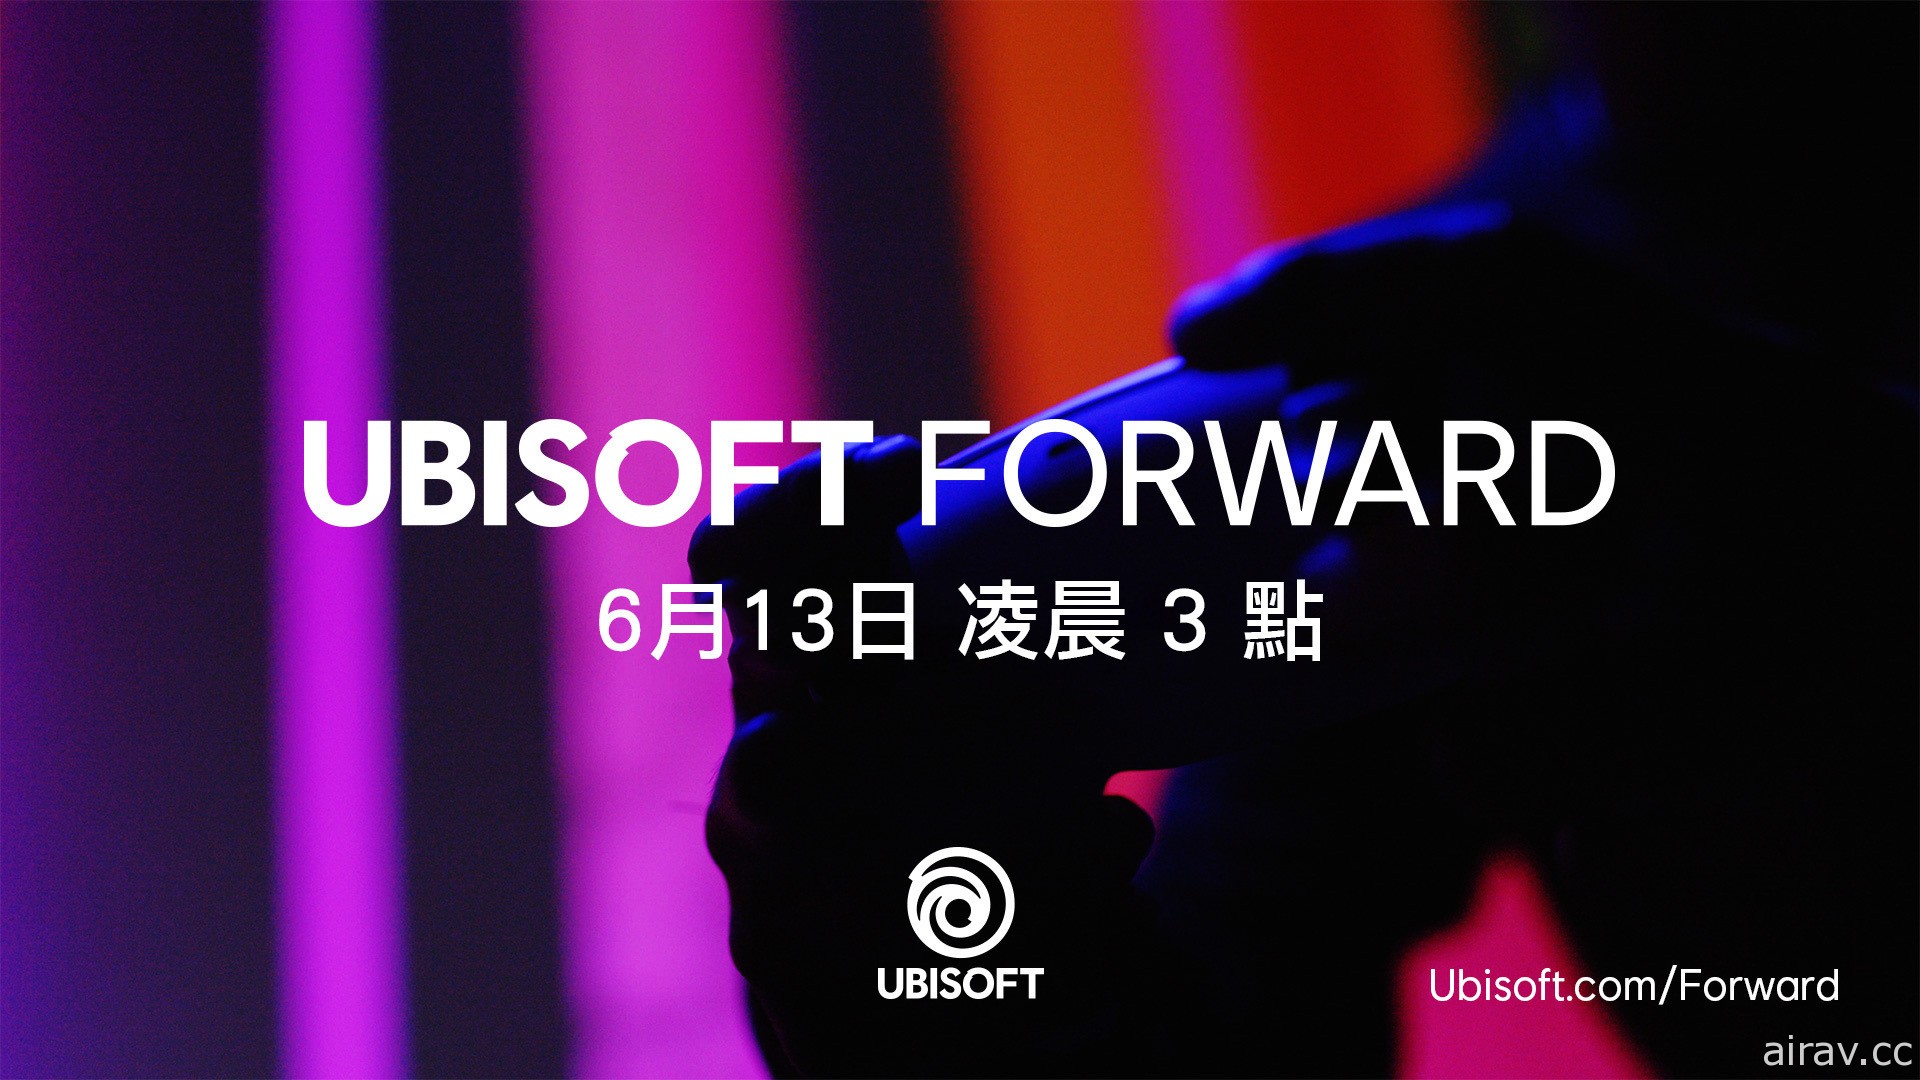 【E3 21】Ubisoft 揭露 6 月 13 日 Ubisoft Forward 發表會資訊